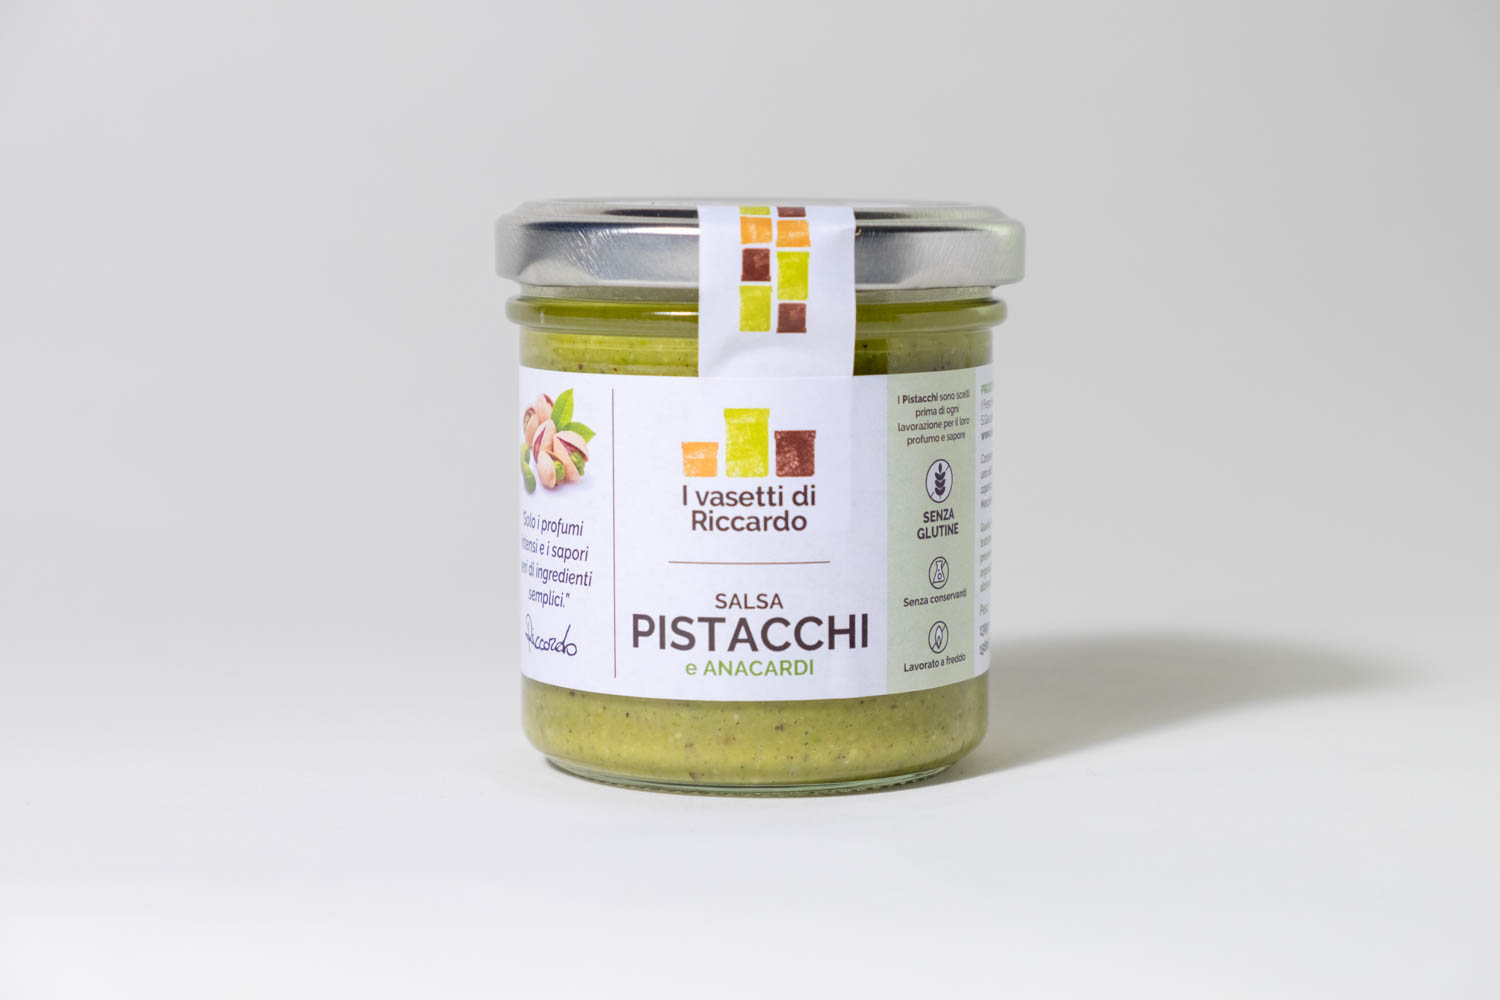 Immagine che presenta un vasetto di salsa pistacchi e anacardi.